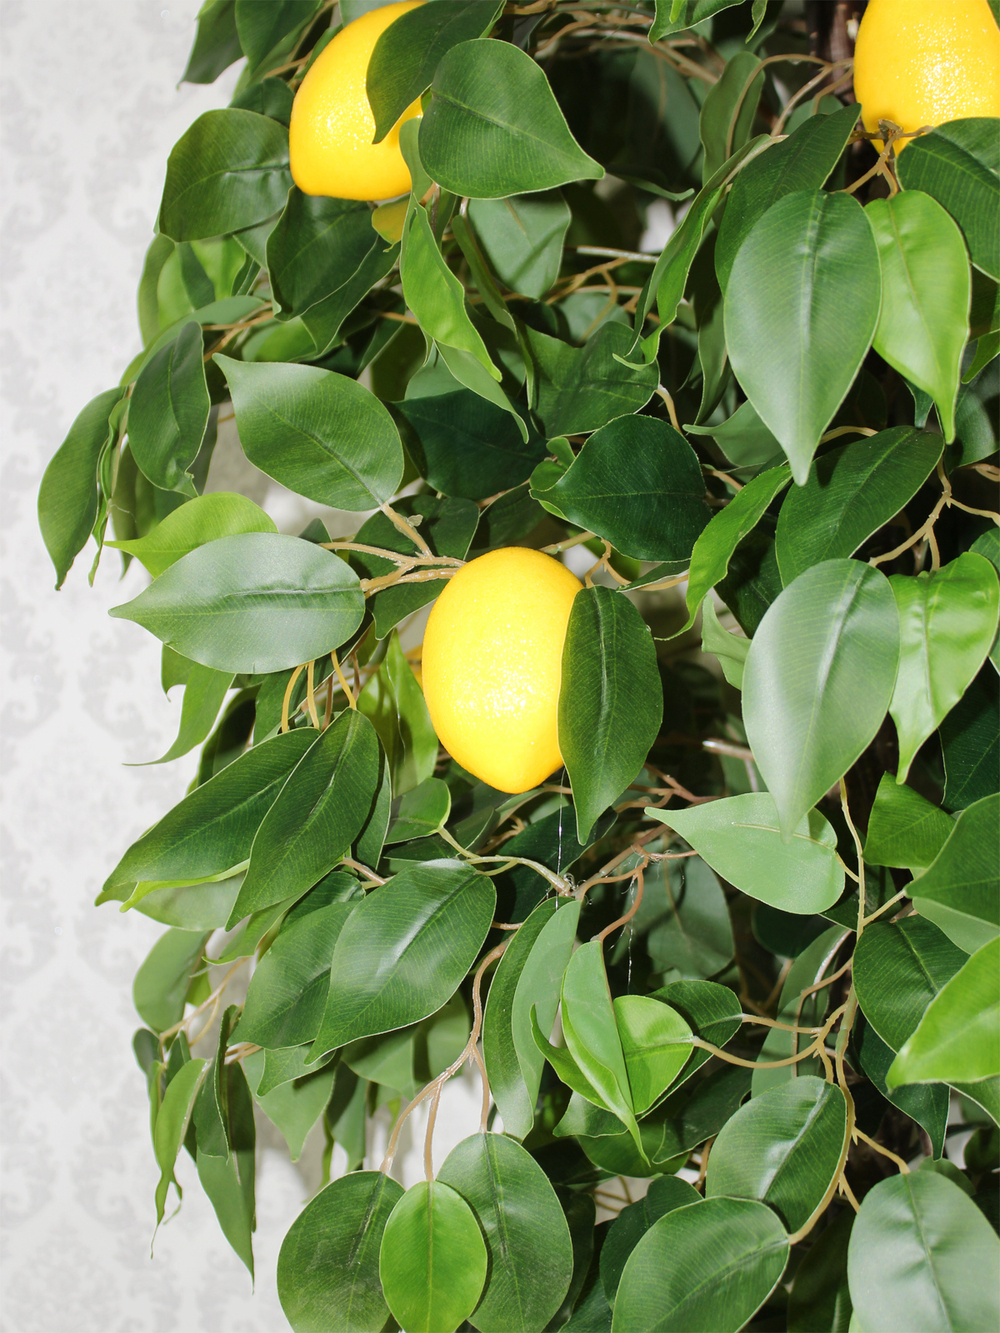 Искусственное дерево Лимон 130см в кашпо